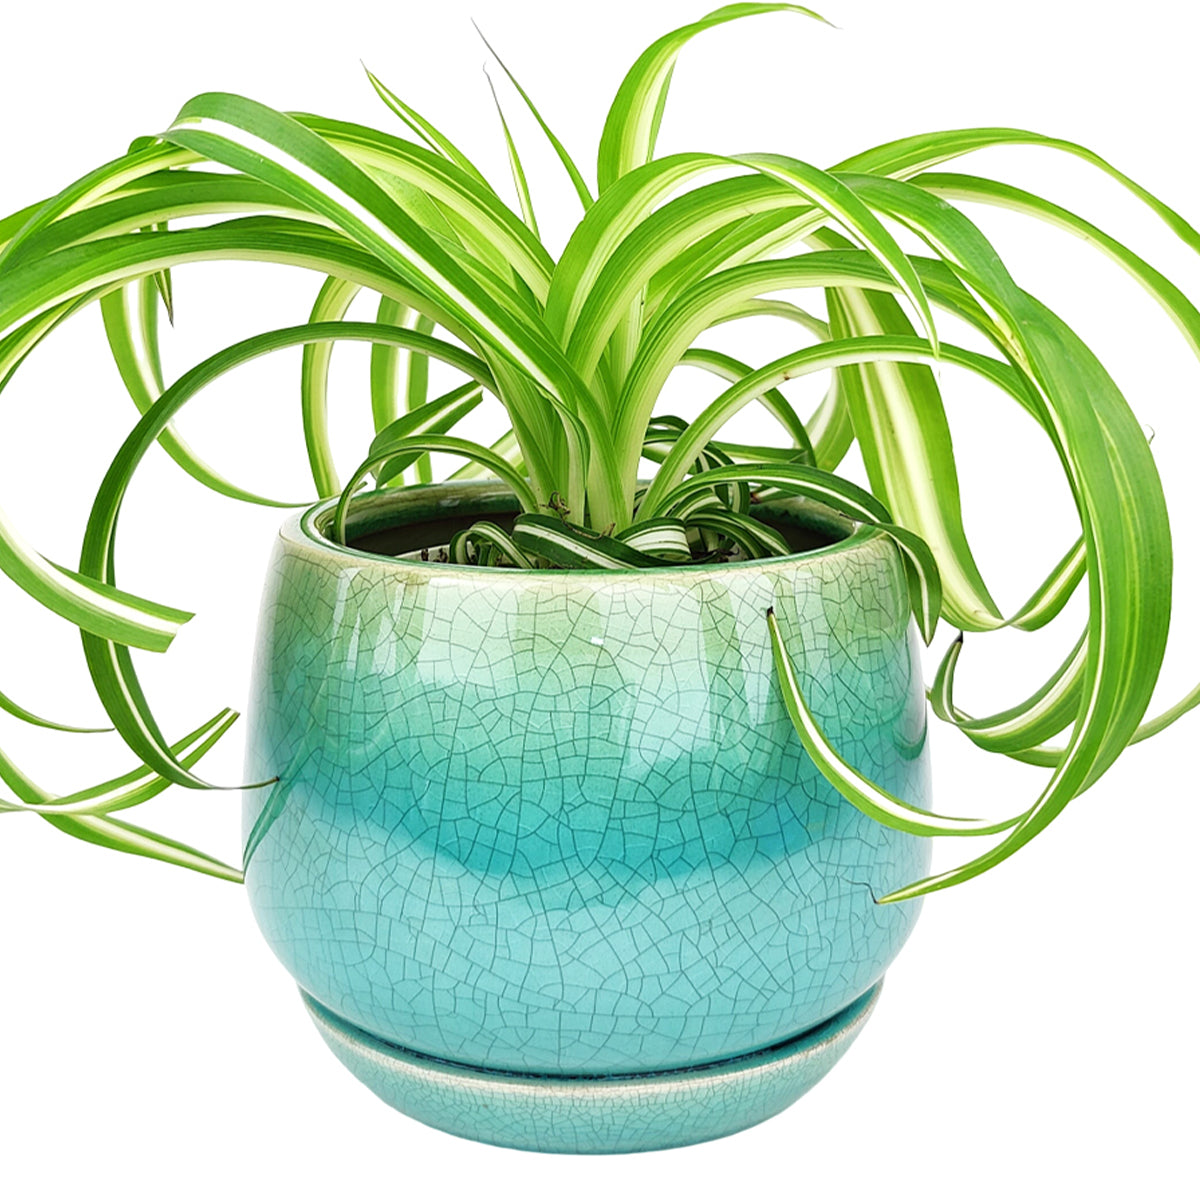 6 inch Blue Glazed Ceramic Contour Planter - Houseplant Pot for Sale by Succulents Box